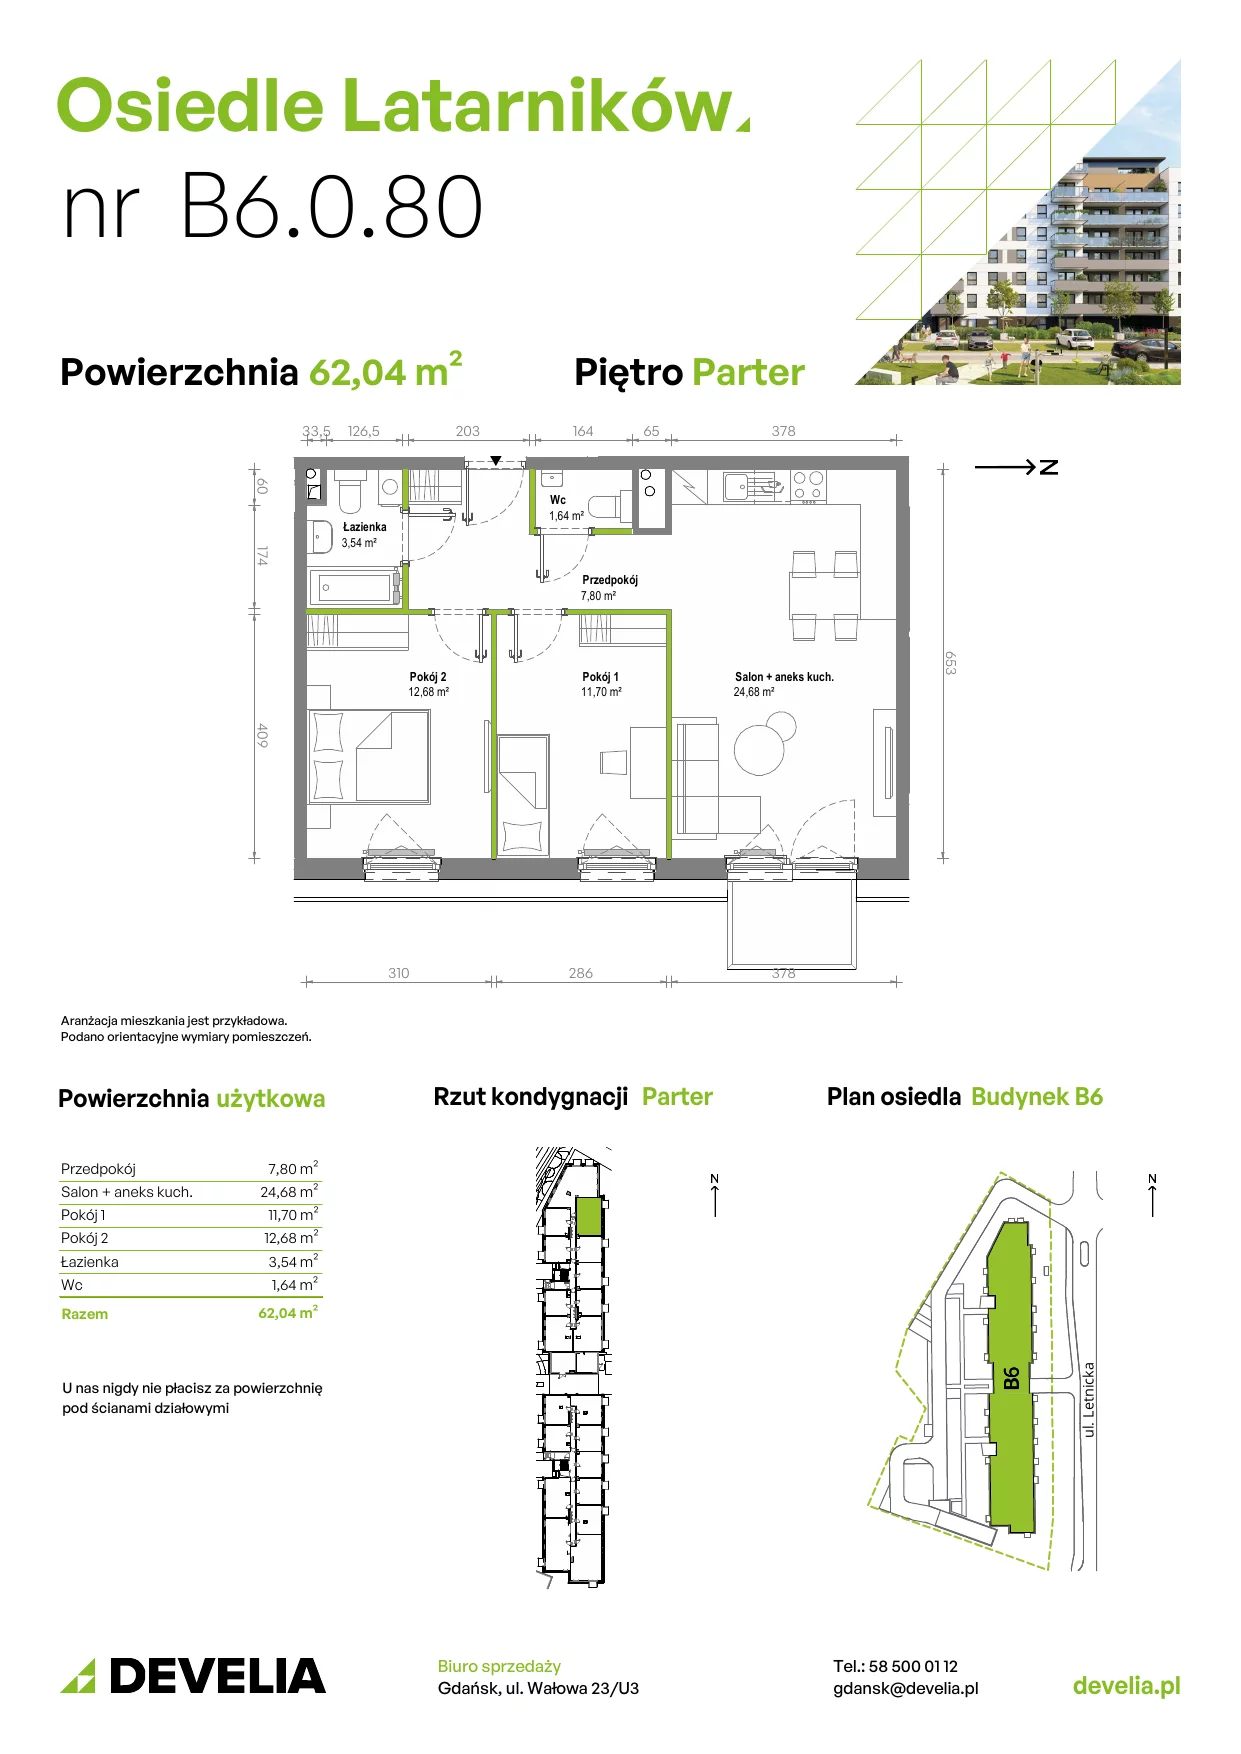 Mieszkanie 61,83 m², parter, oferta nr B6.0.080, Osiedle Latarników, Gdańsk, Letnica, ul. Letnicka 1